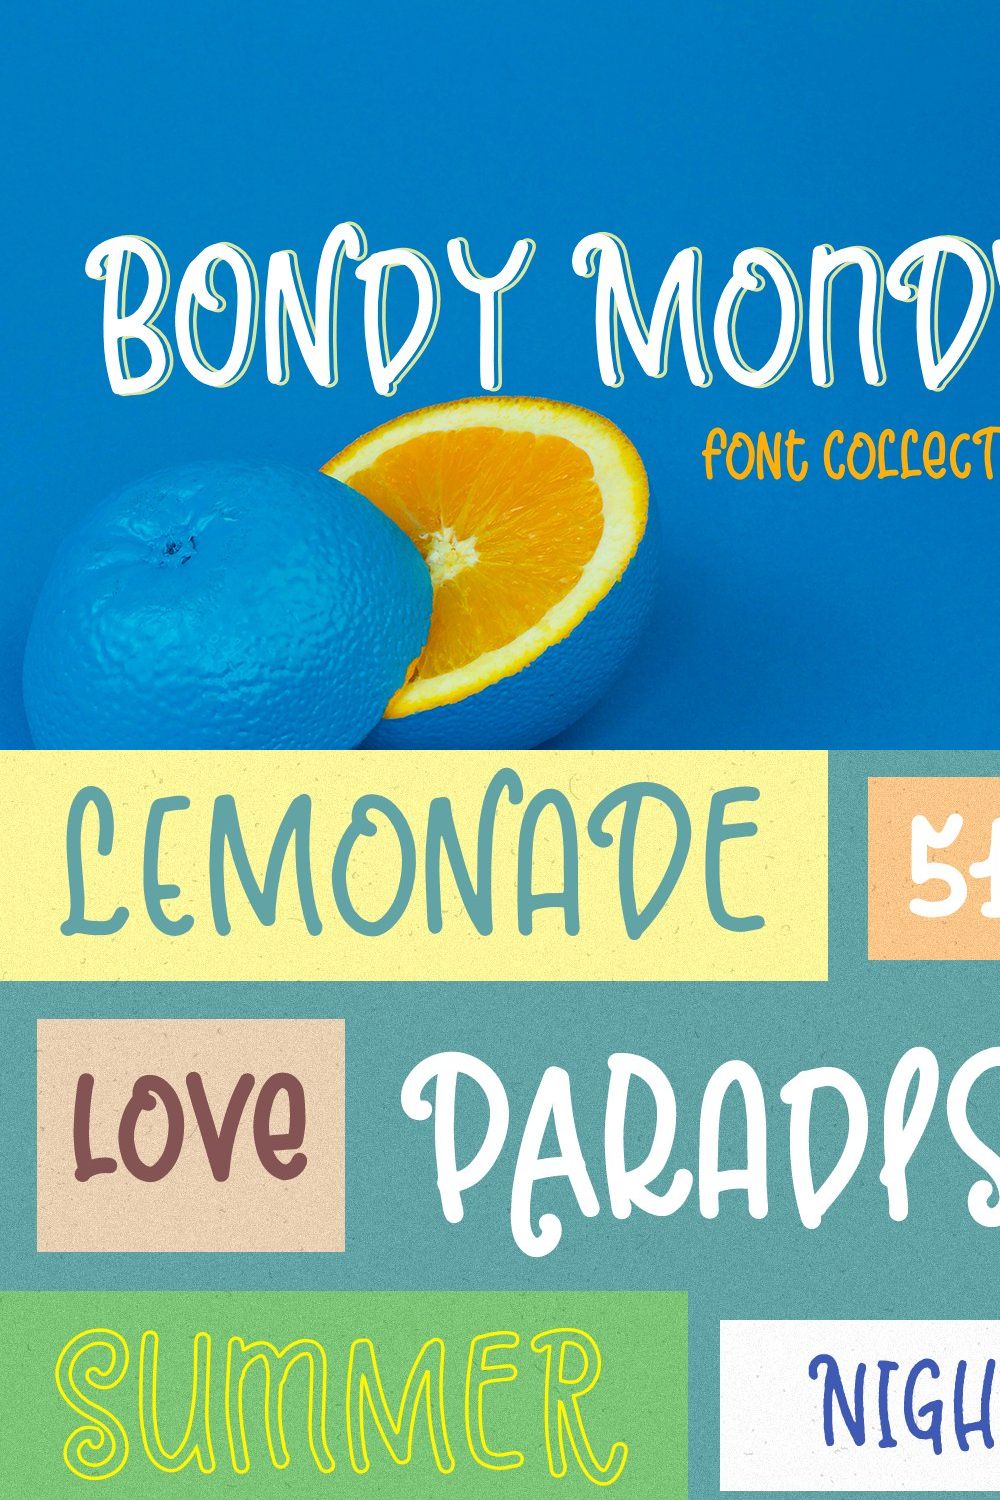 Bondy Mondy pinterest preview image.